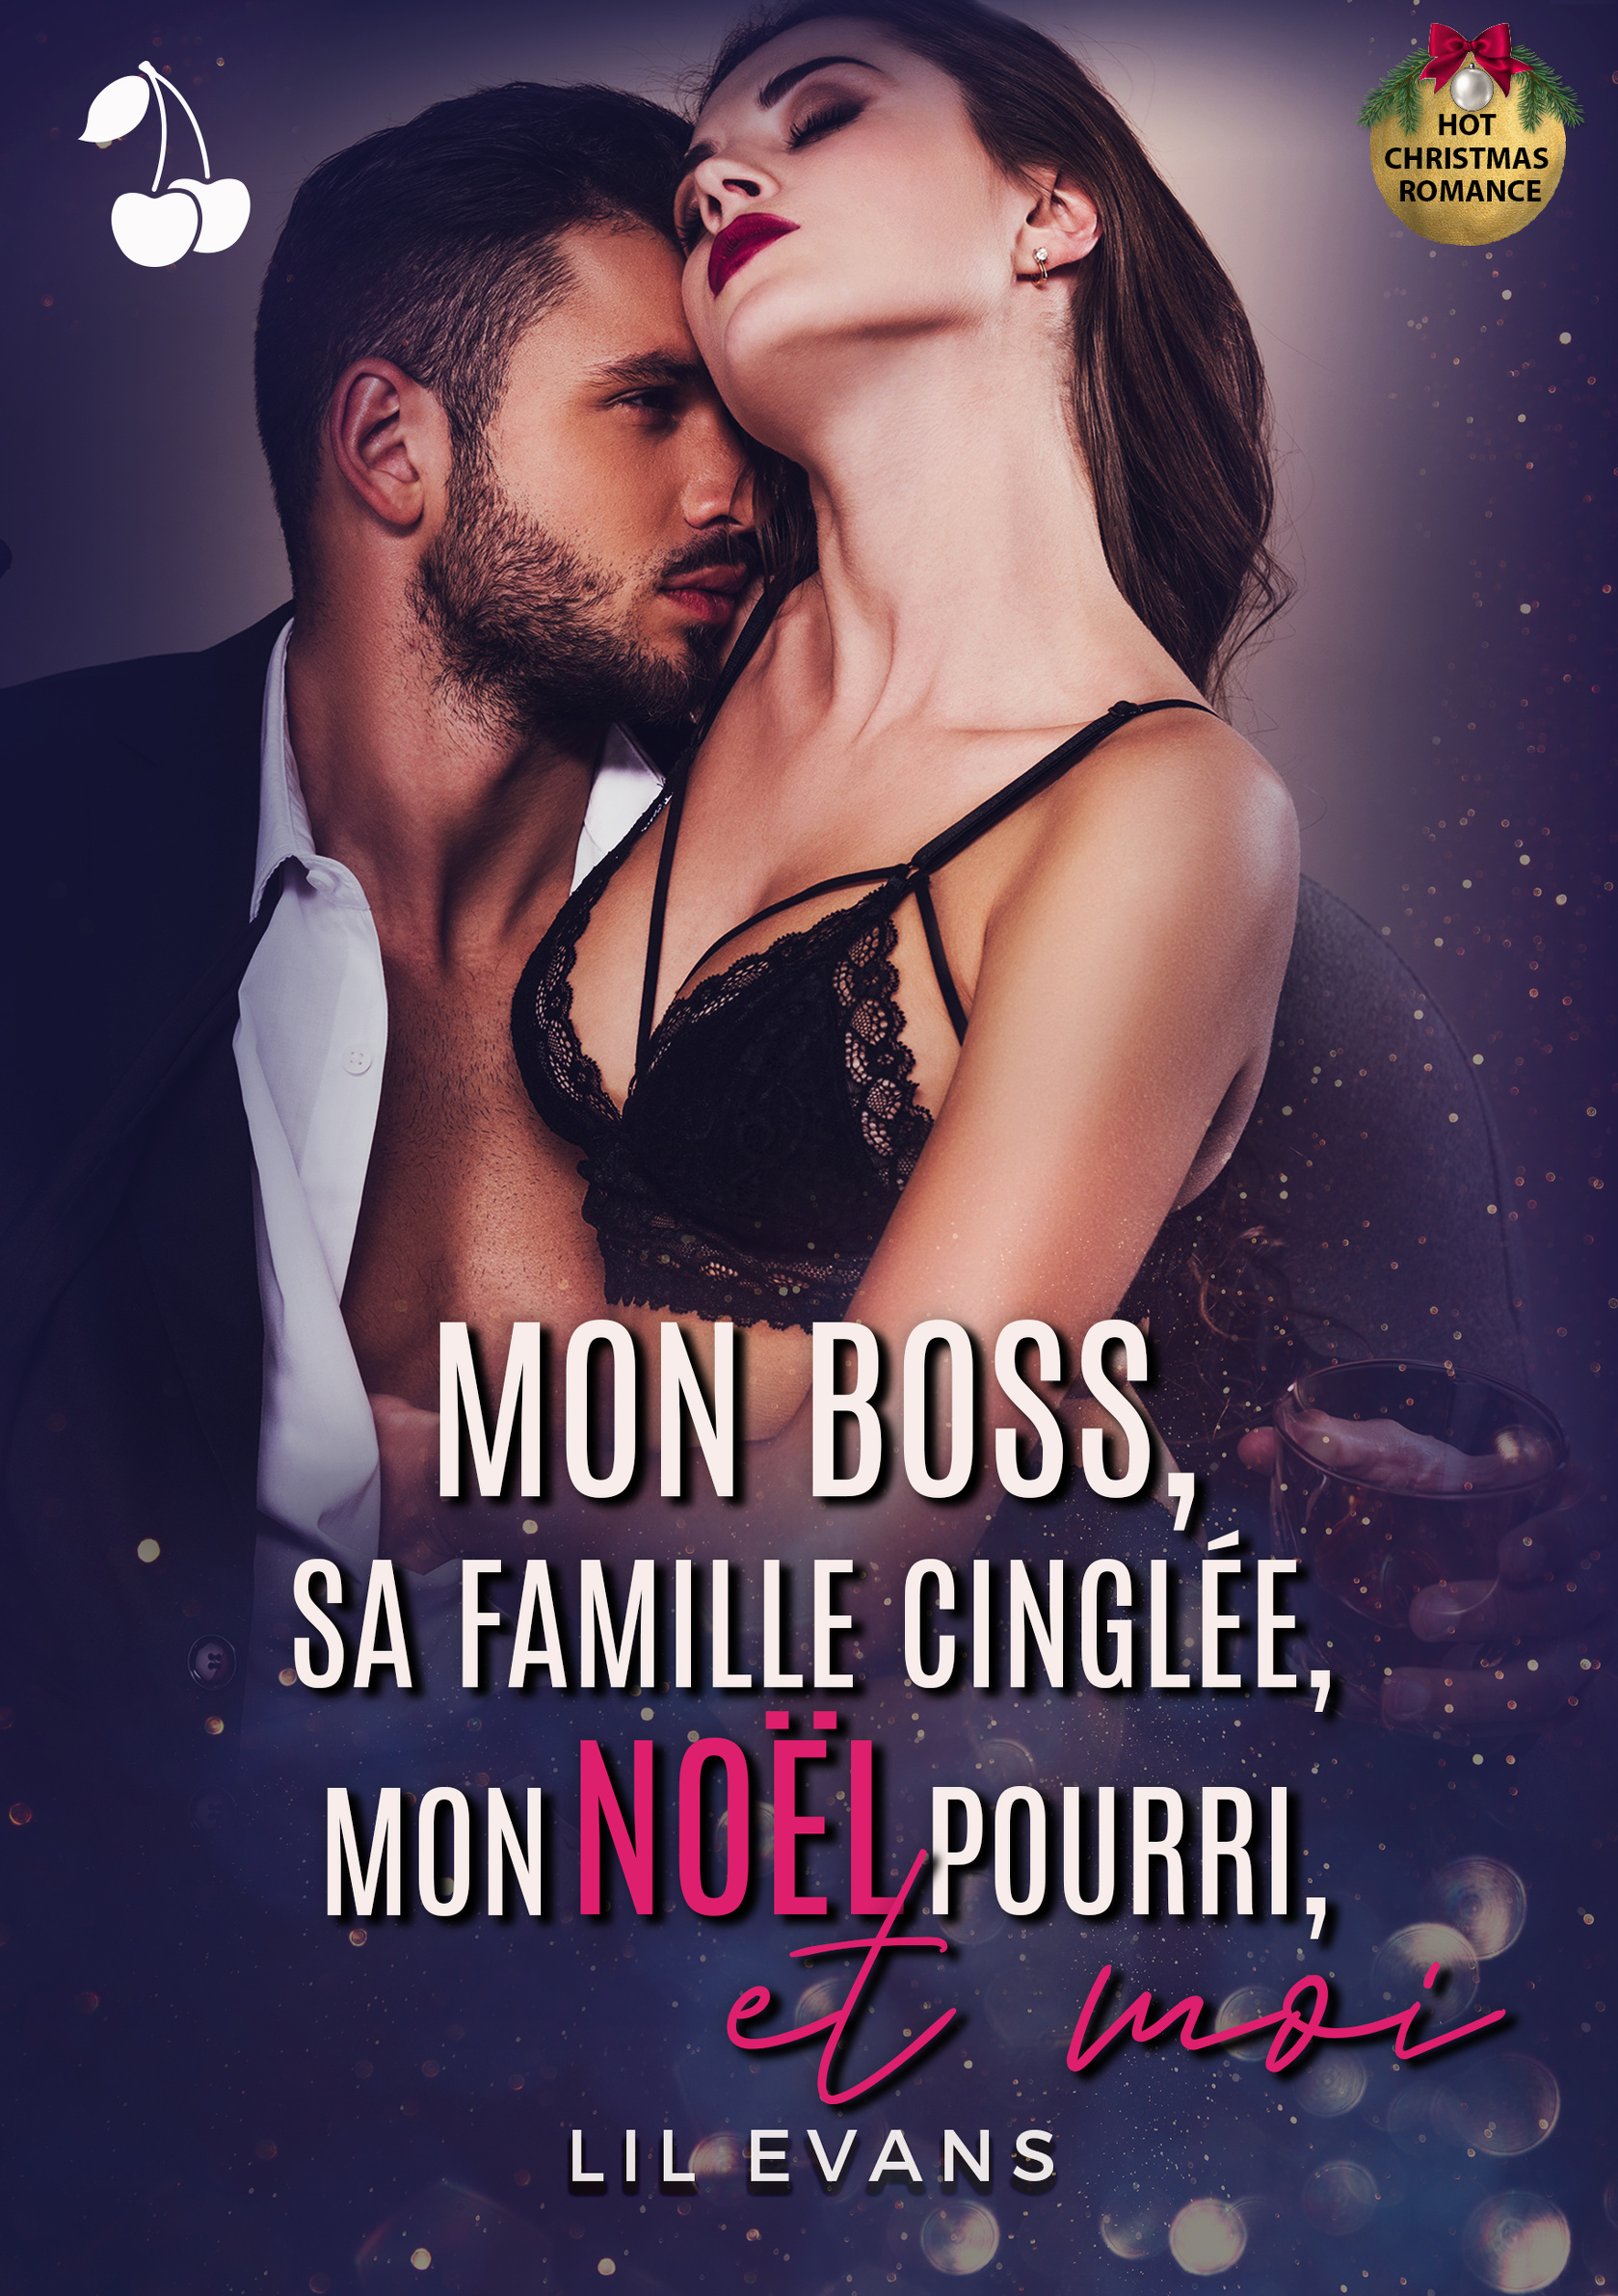 Tag romance sur Entre 2 livres - Page 2 Mon-boss-sa-famille-cinglee-mon-noel-pourri-et-moi-4935292